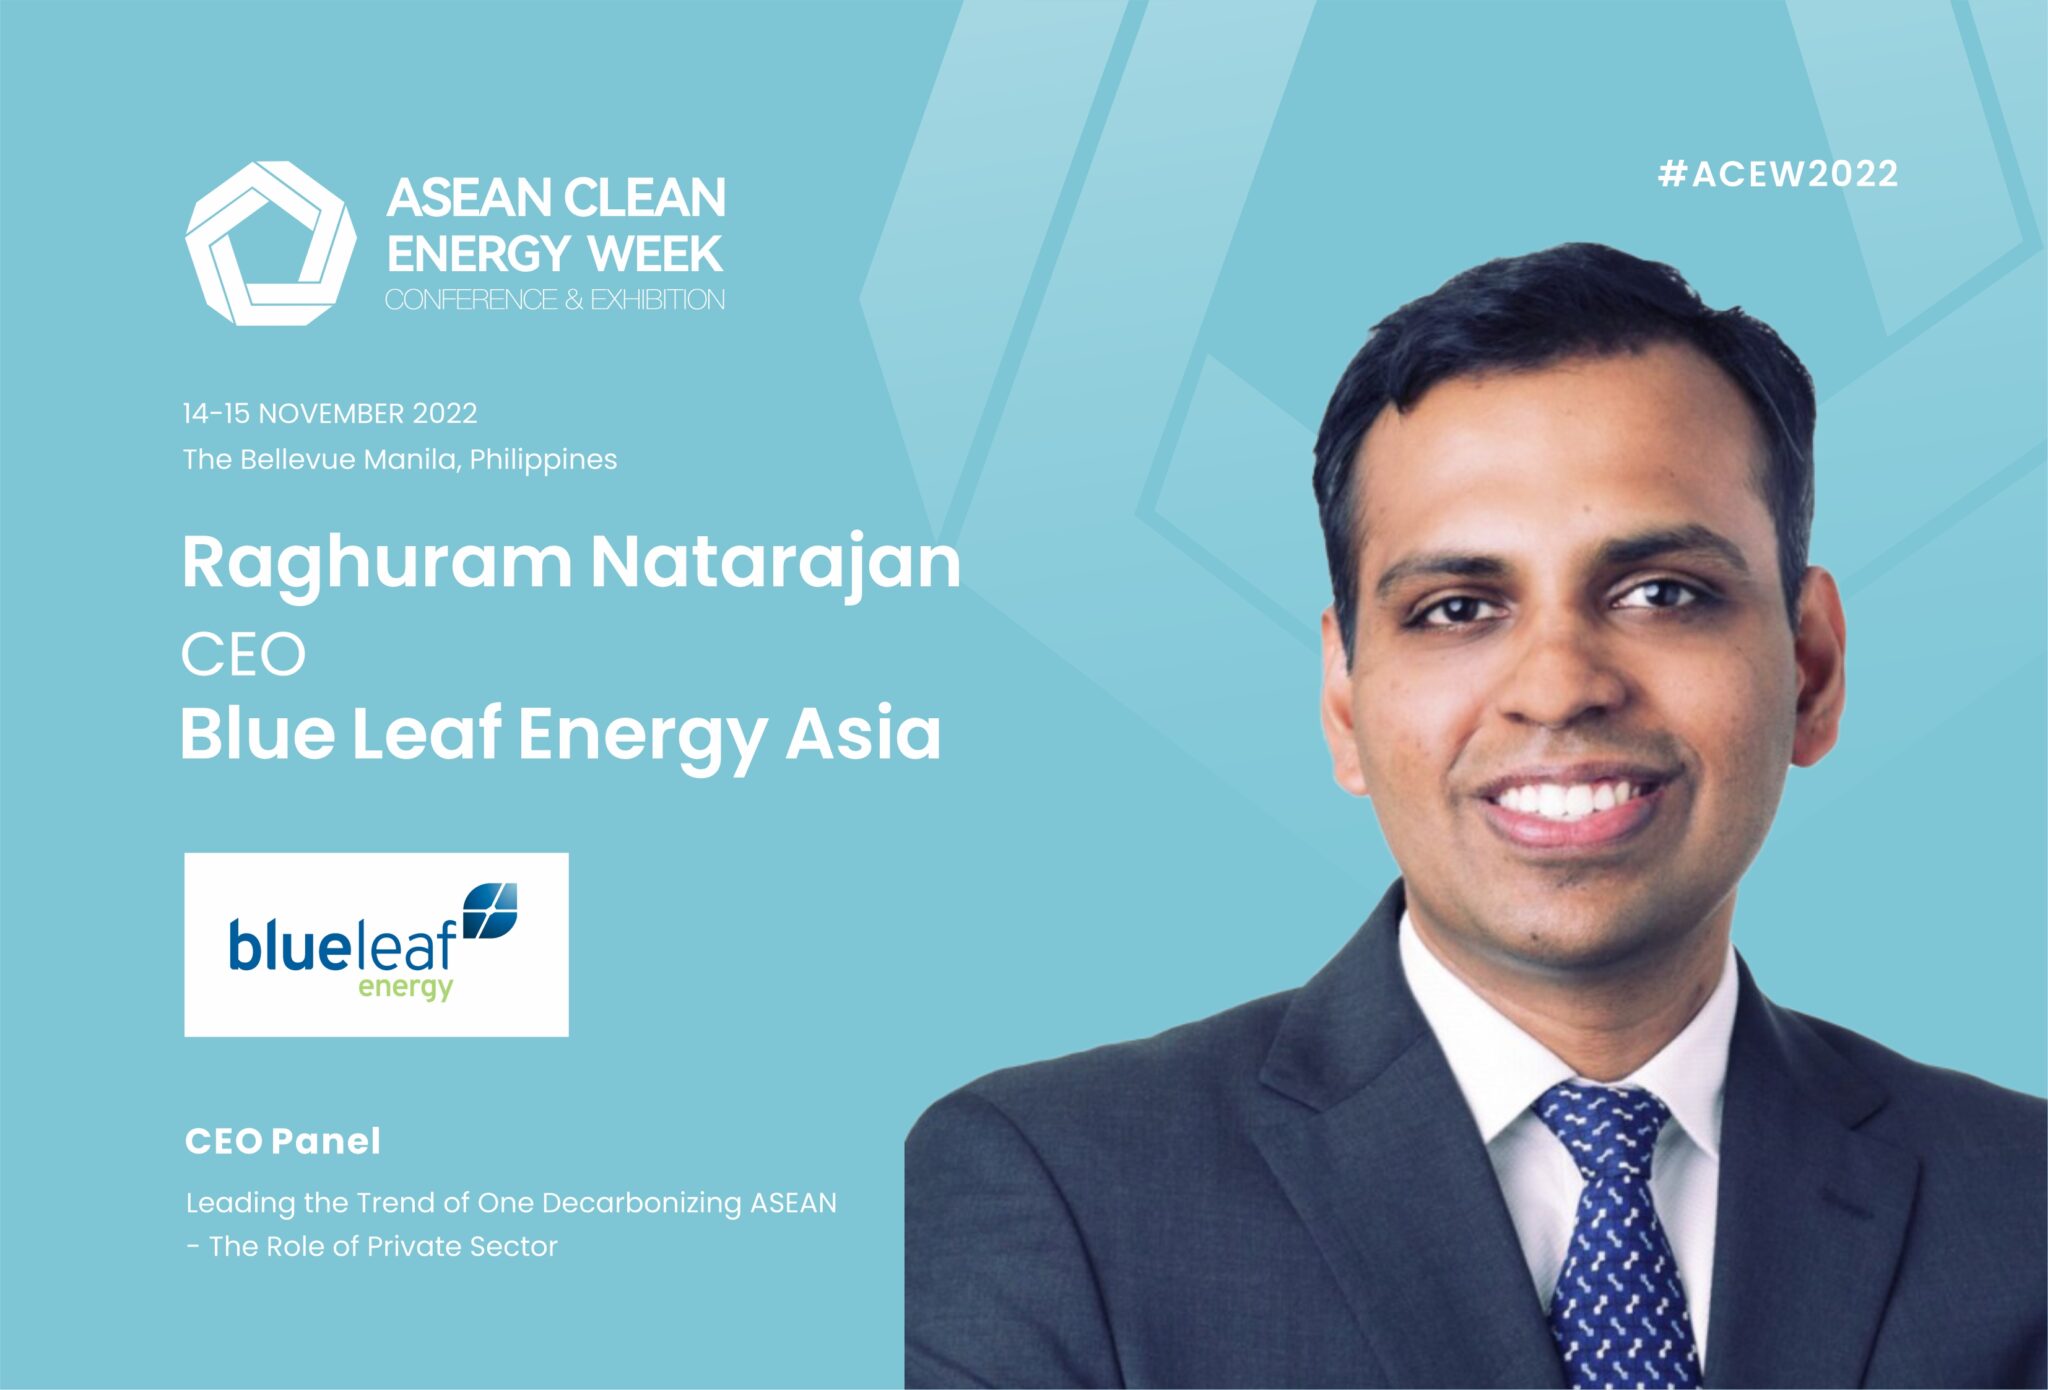 ASEAN Clean Energy Week blueleaf energy